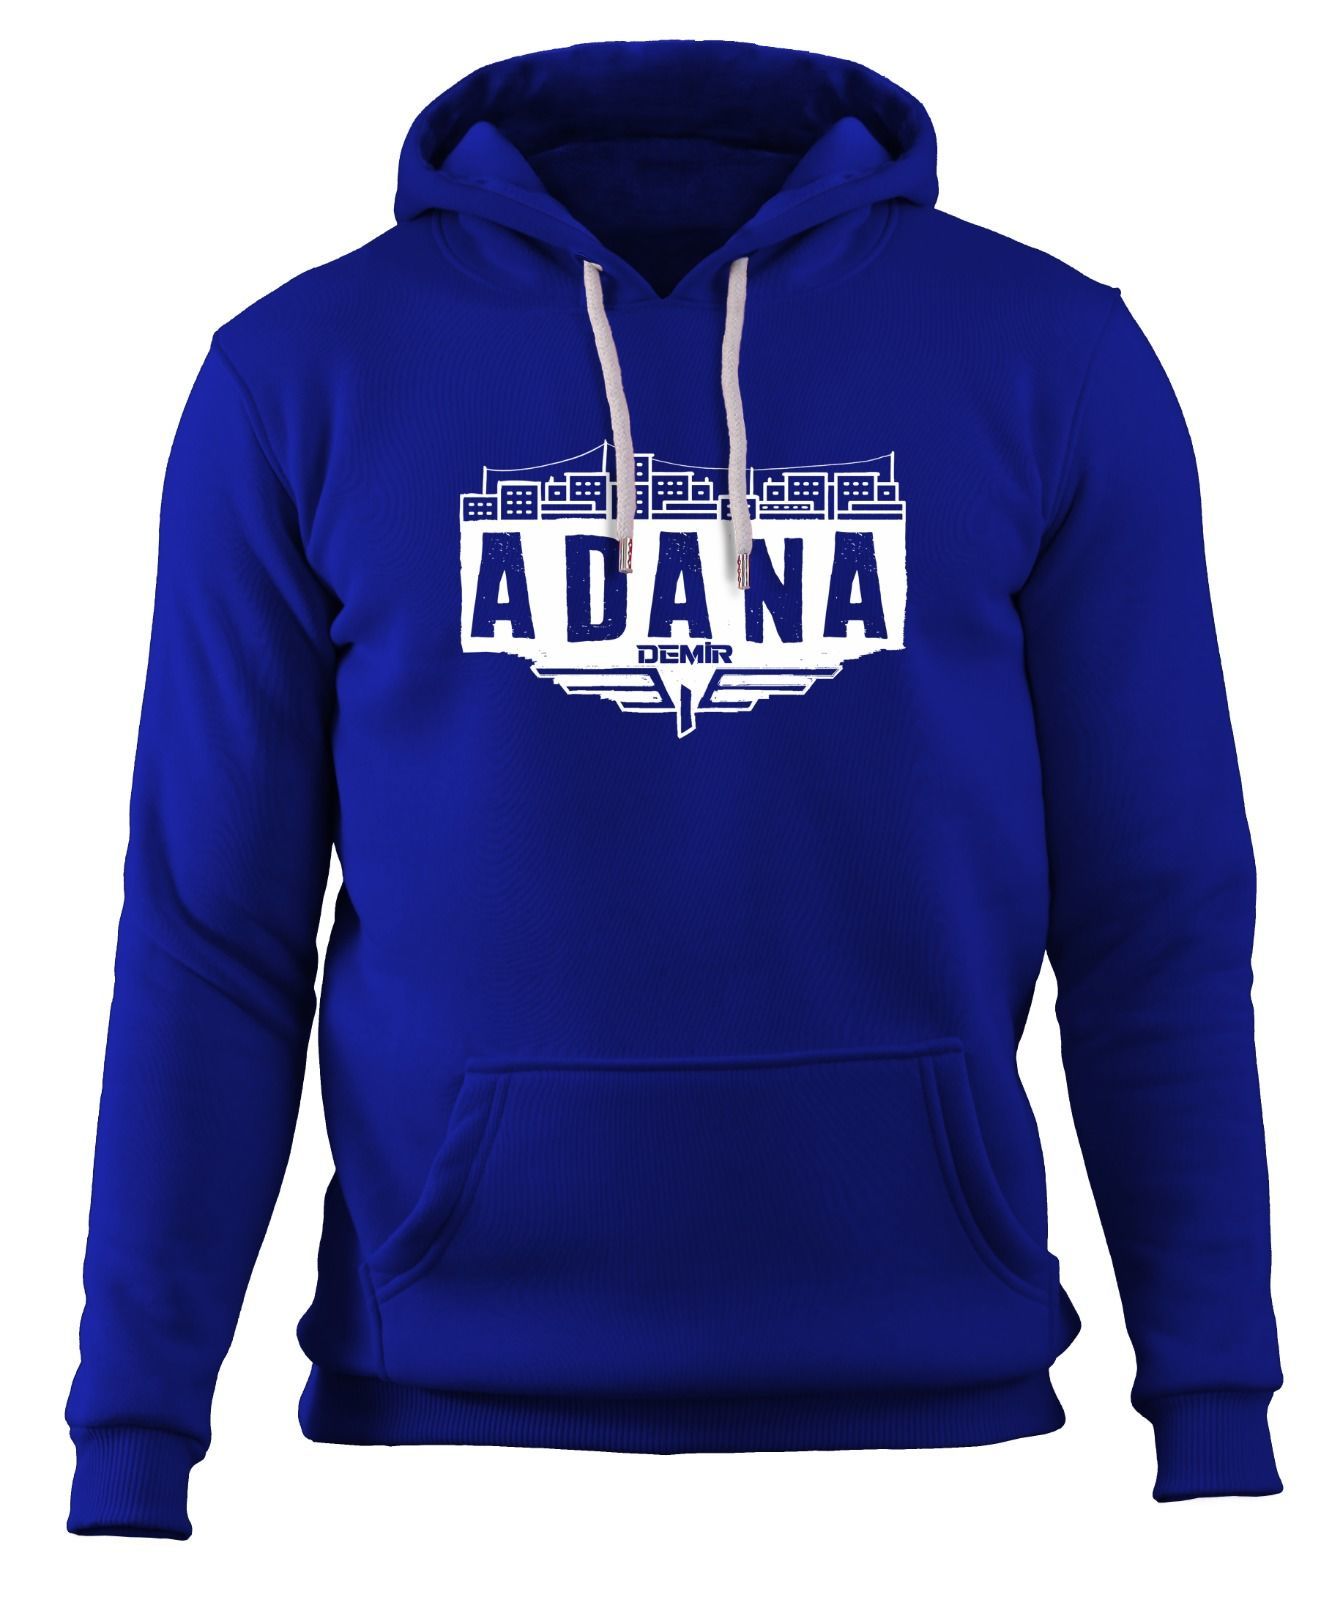 Adana Demirspor Sweatshirt